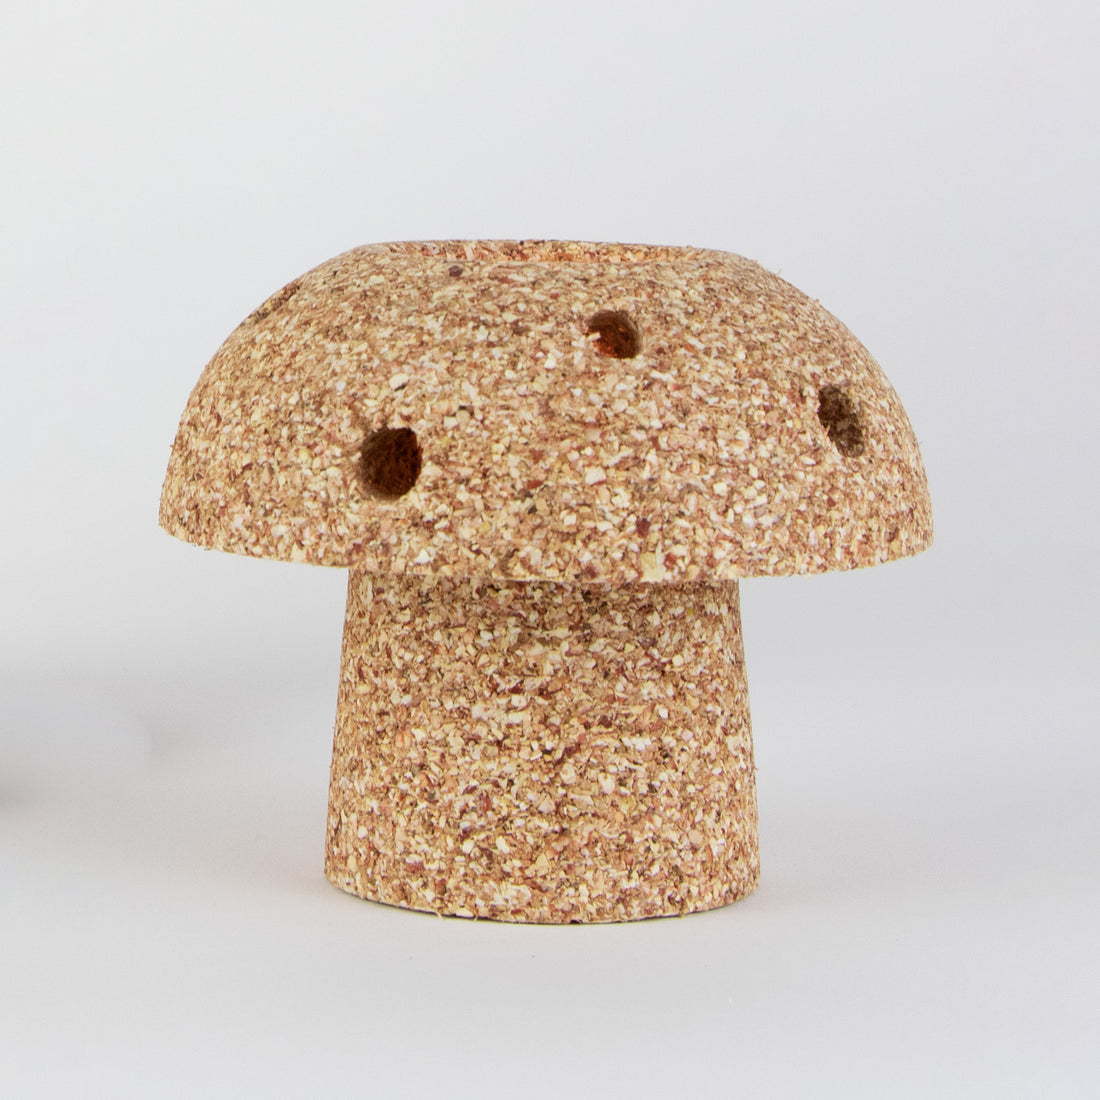 Corn Cob Mushroom Tea Light Holder